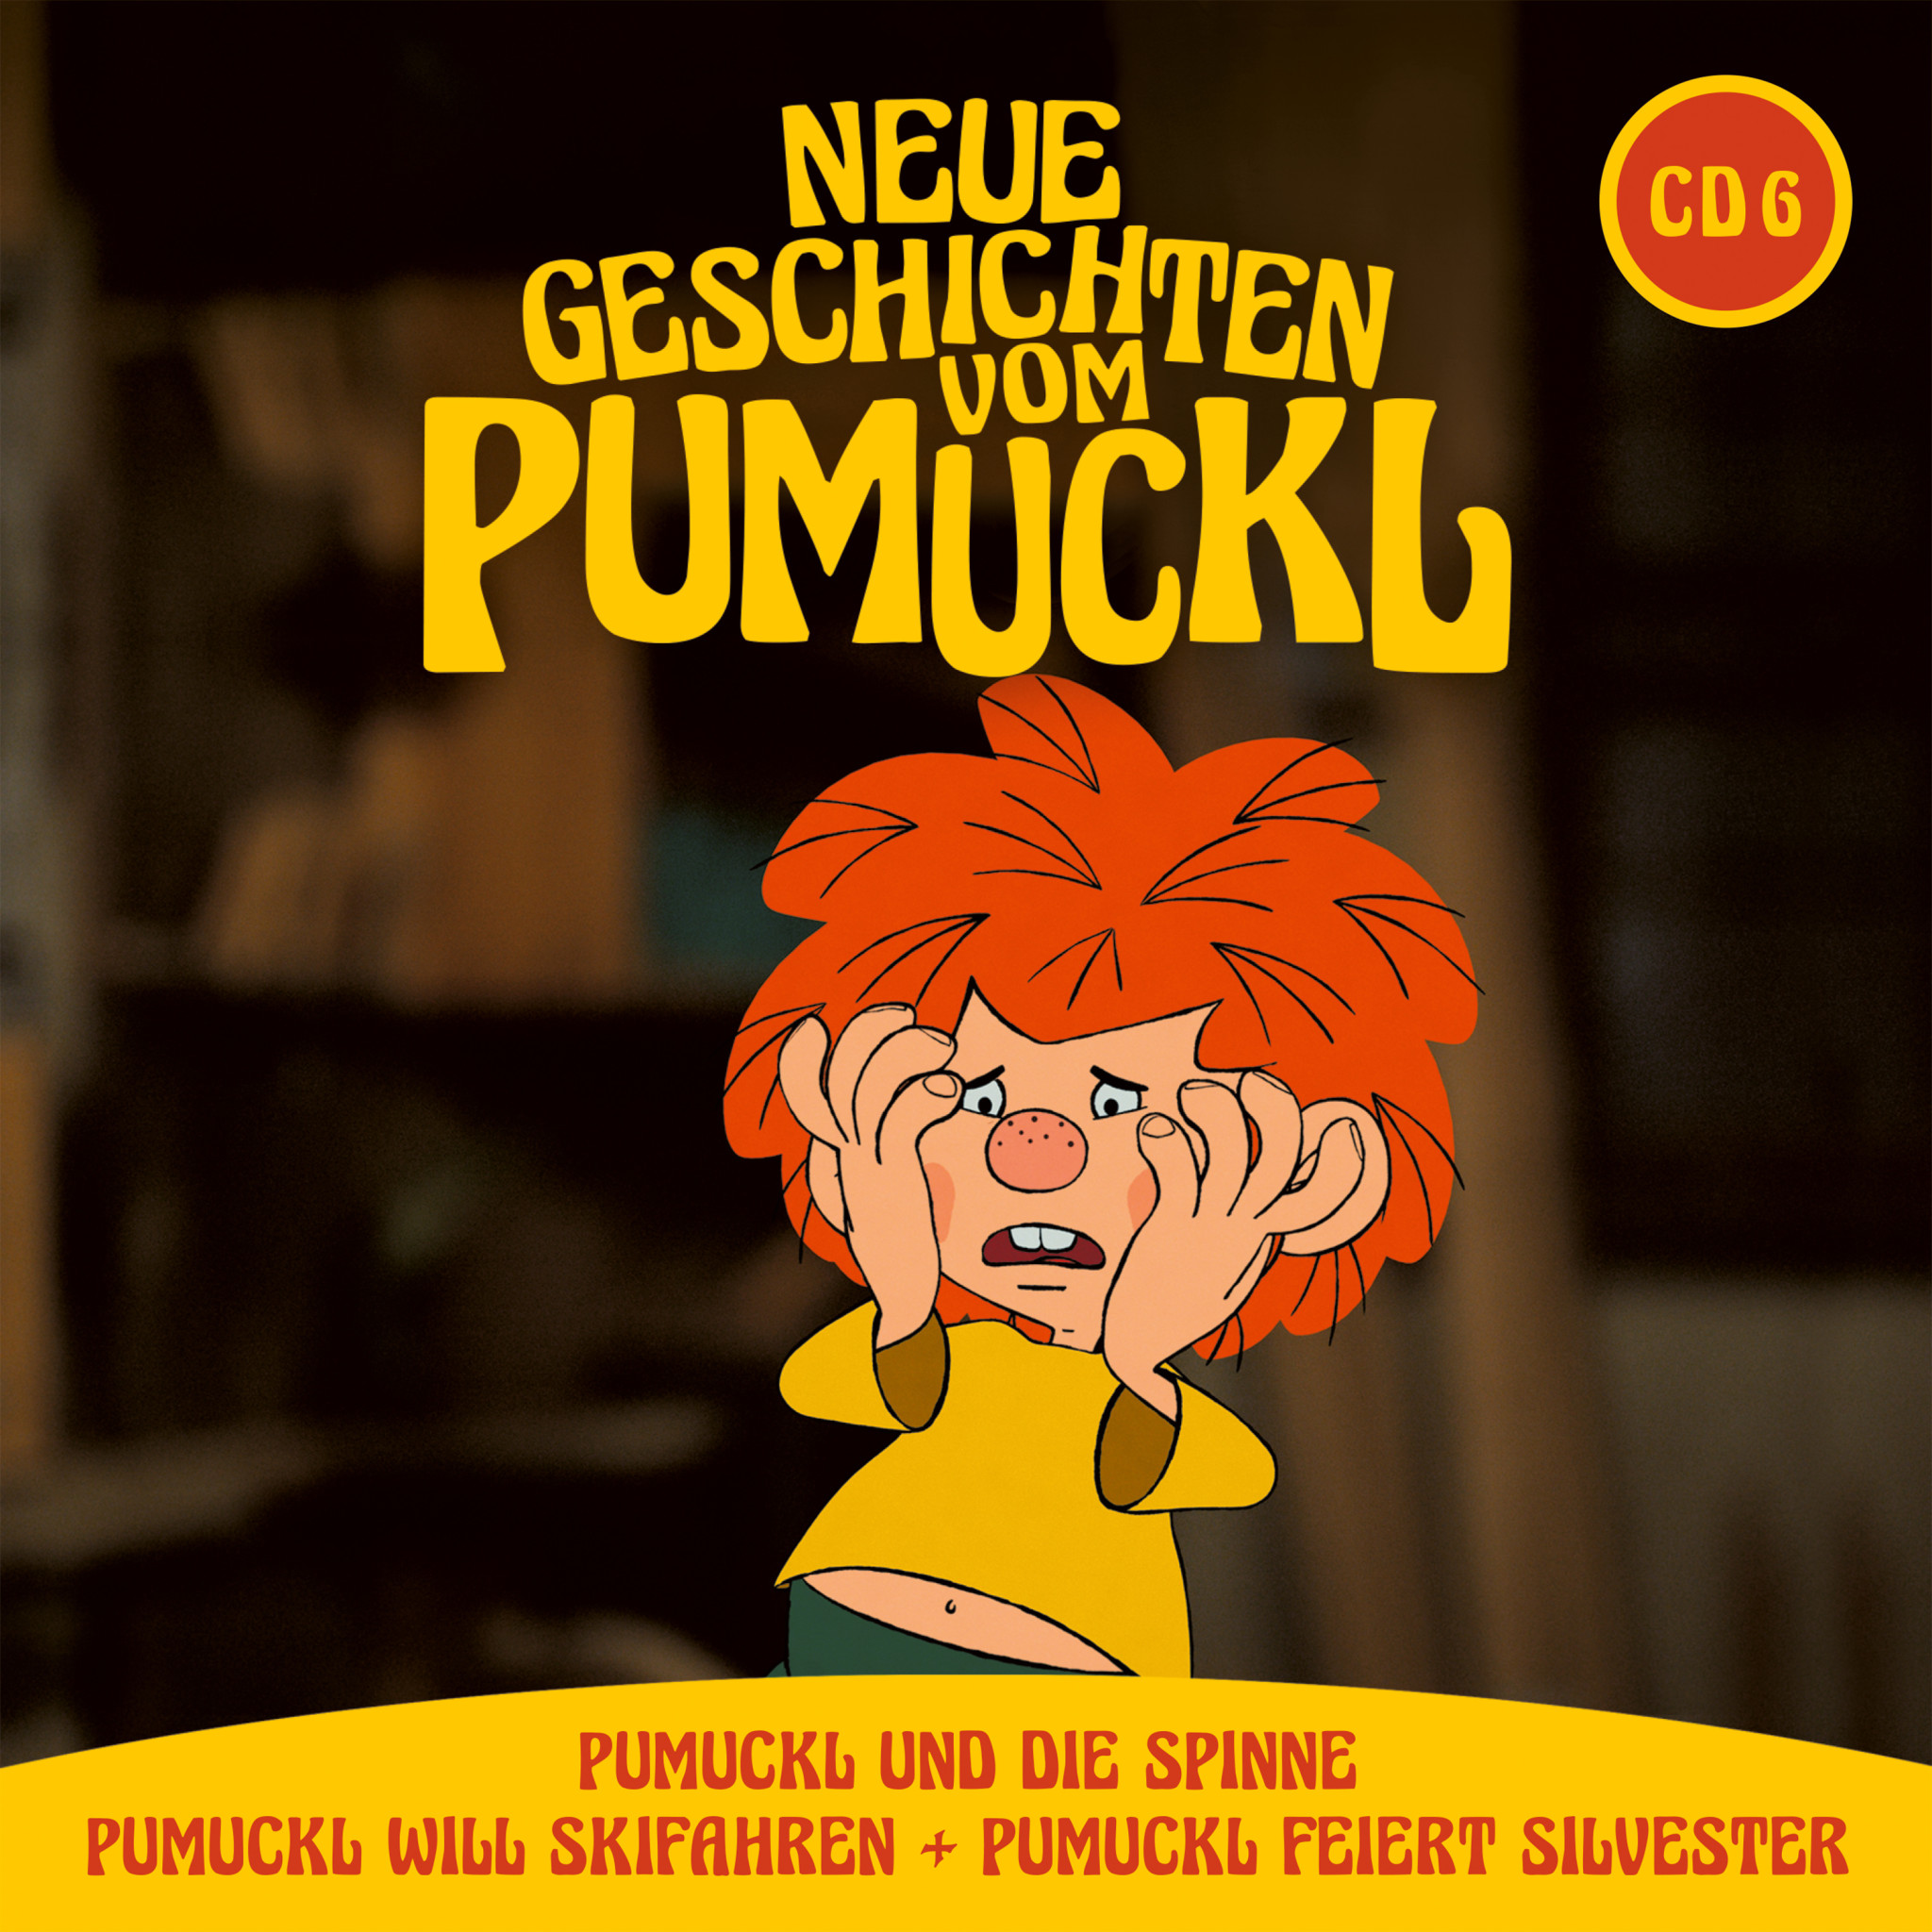 Neue Geschichten vom Pumuckl - CD 6 (Folge 11 + 12 + 13) Cover JPG.jpg